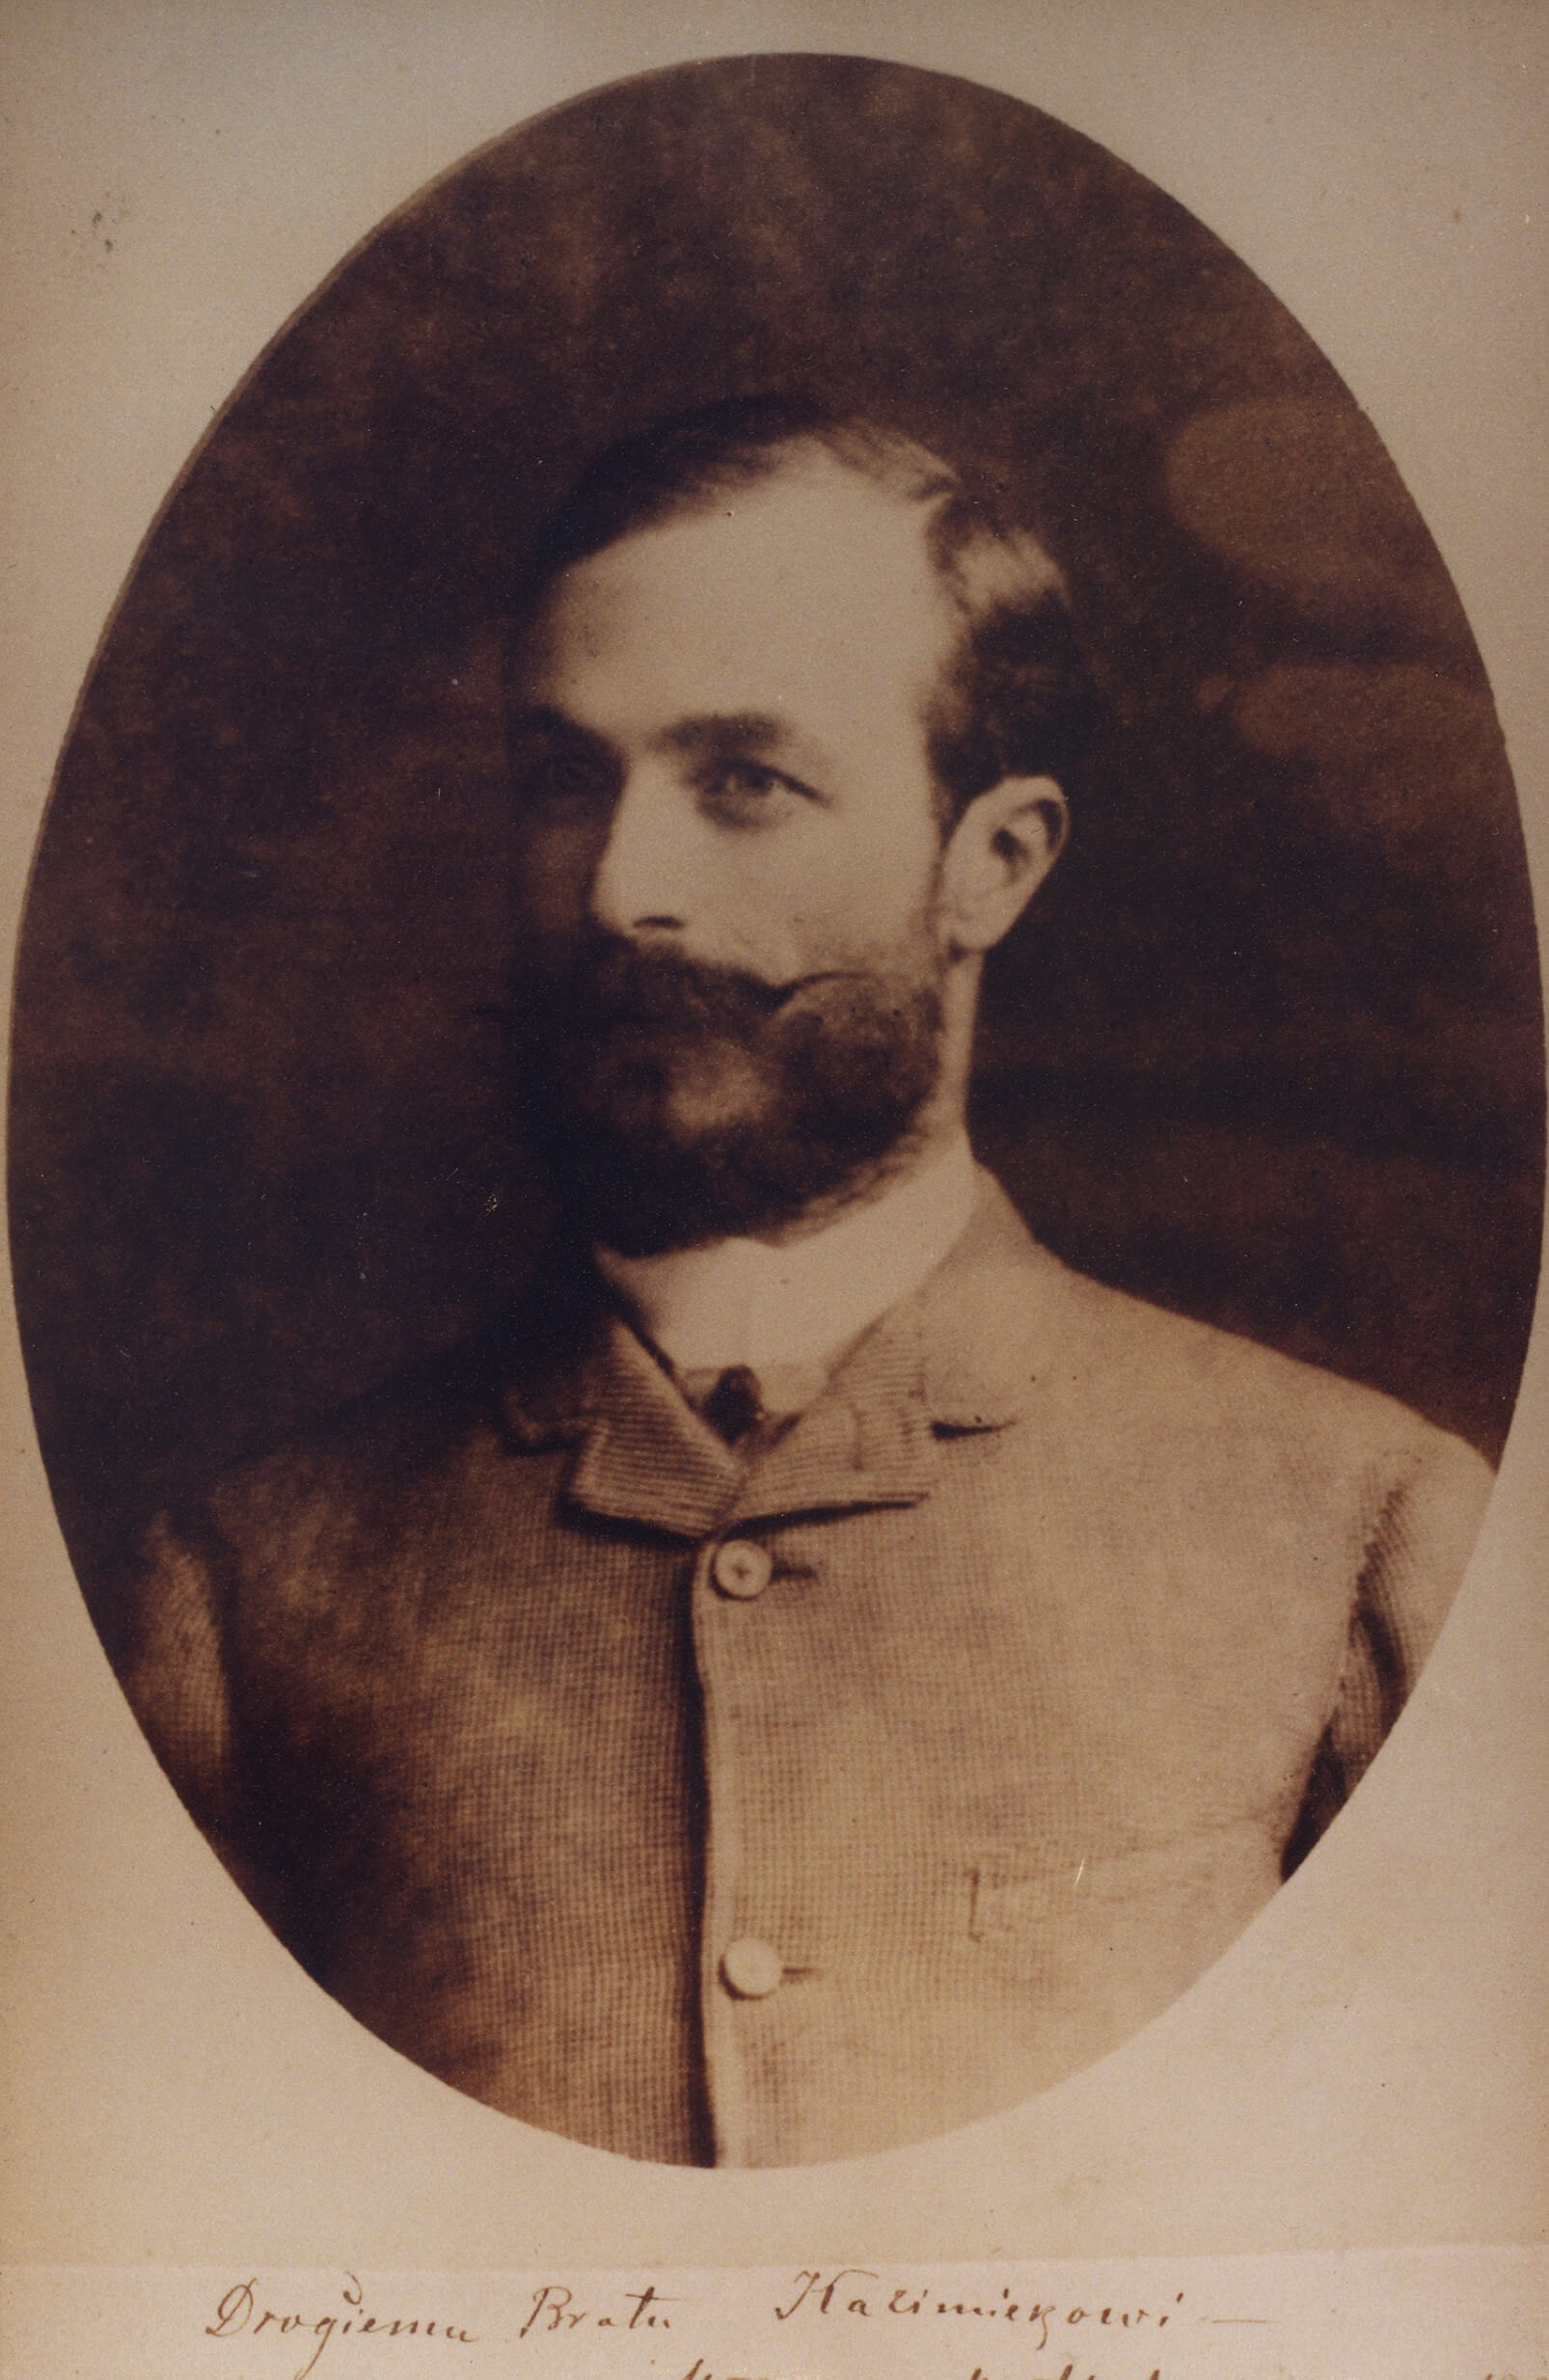 Władysław Matlakowski, photo, late 19th century